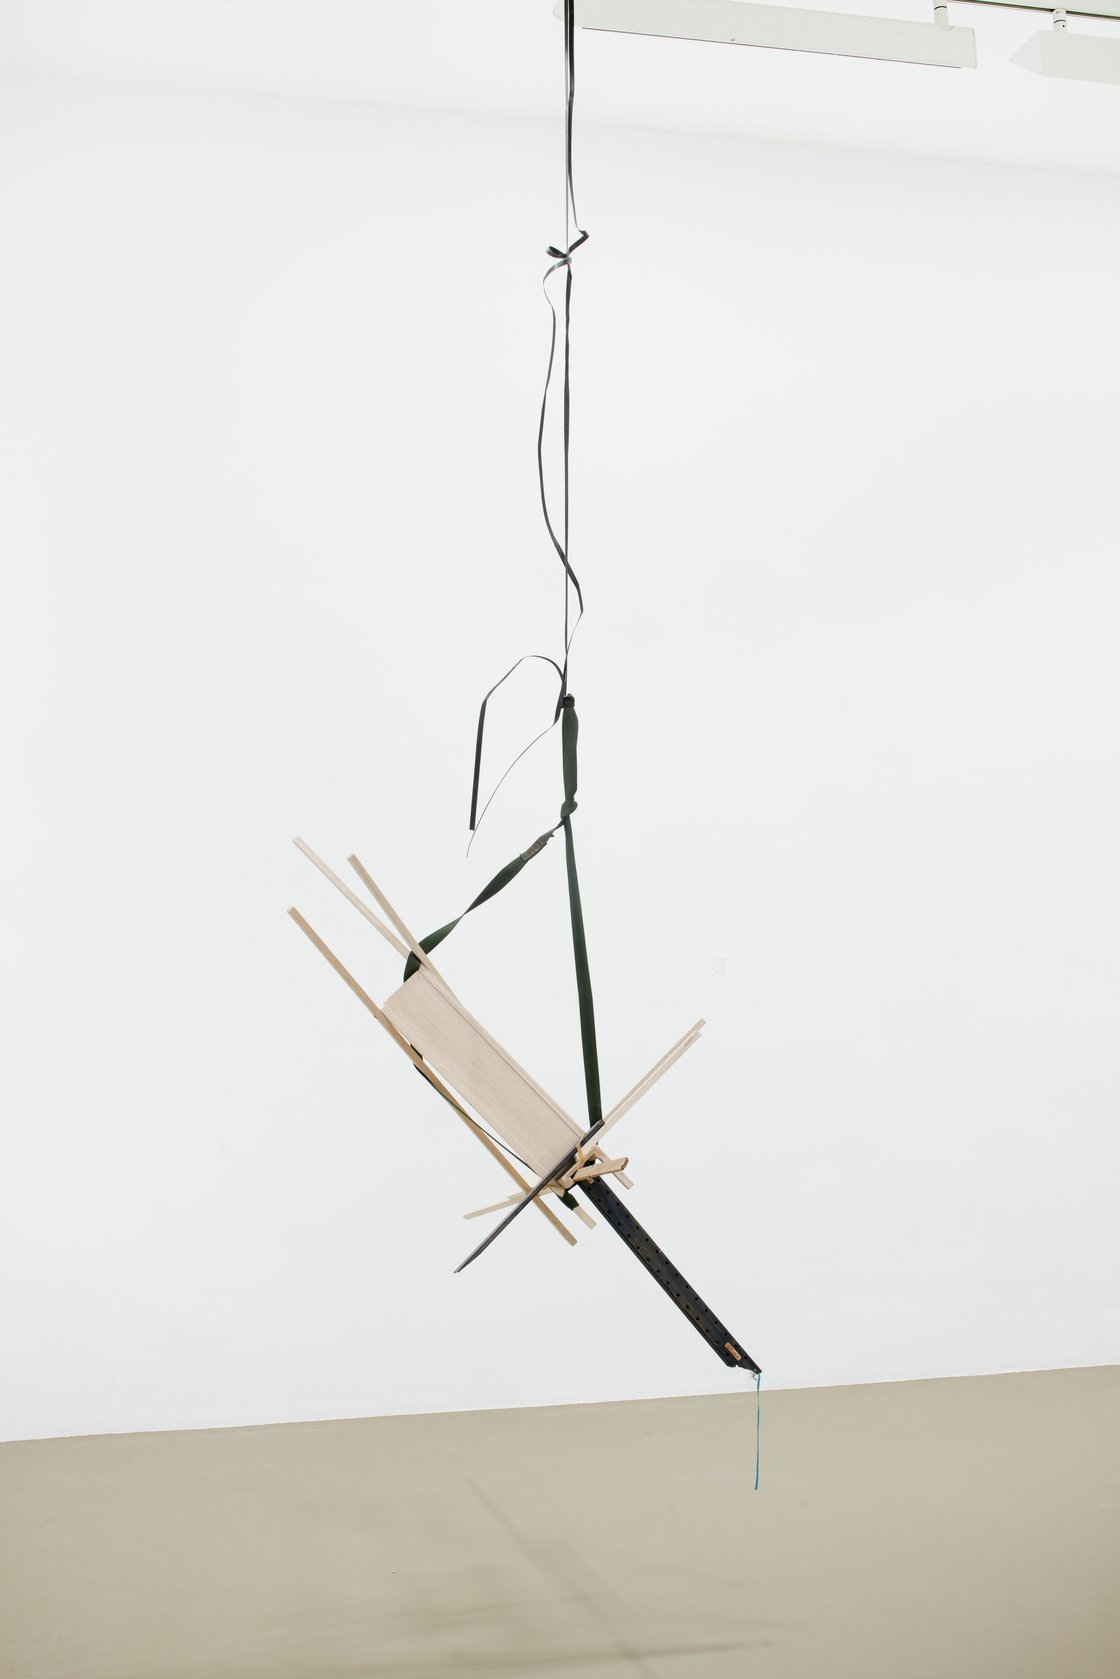 Abraham Cruzvillegas, Untitled Portable Sculpture (La Señora de Las Nueces) 1, 2020-2021